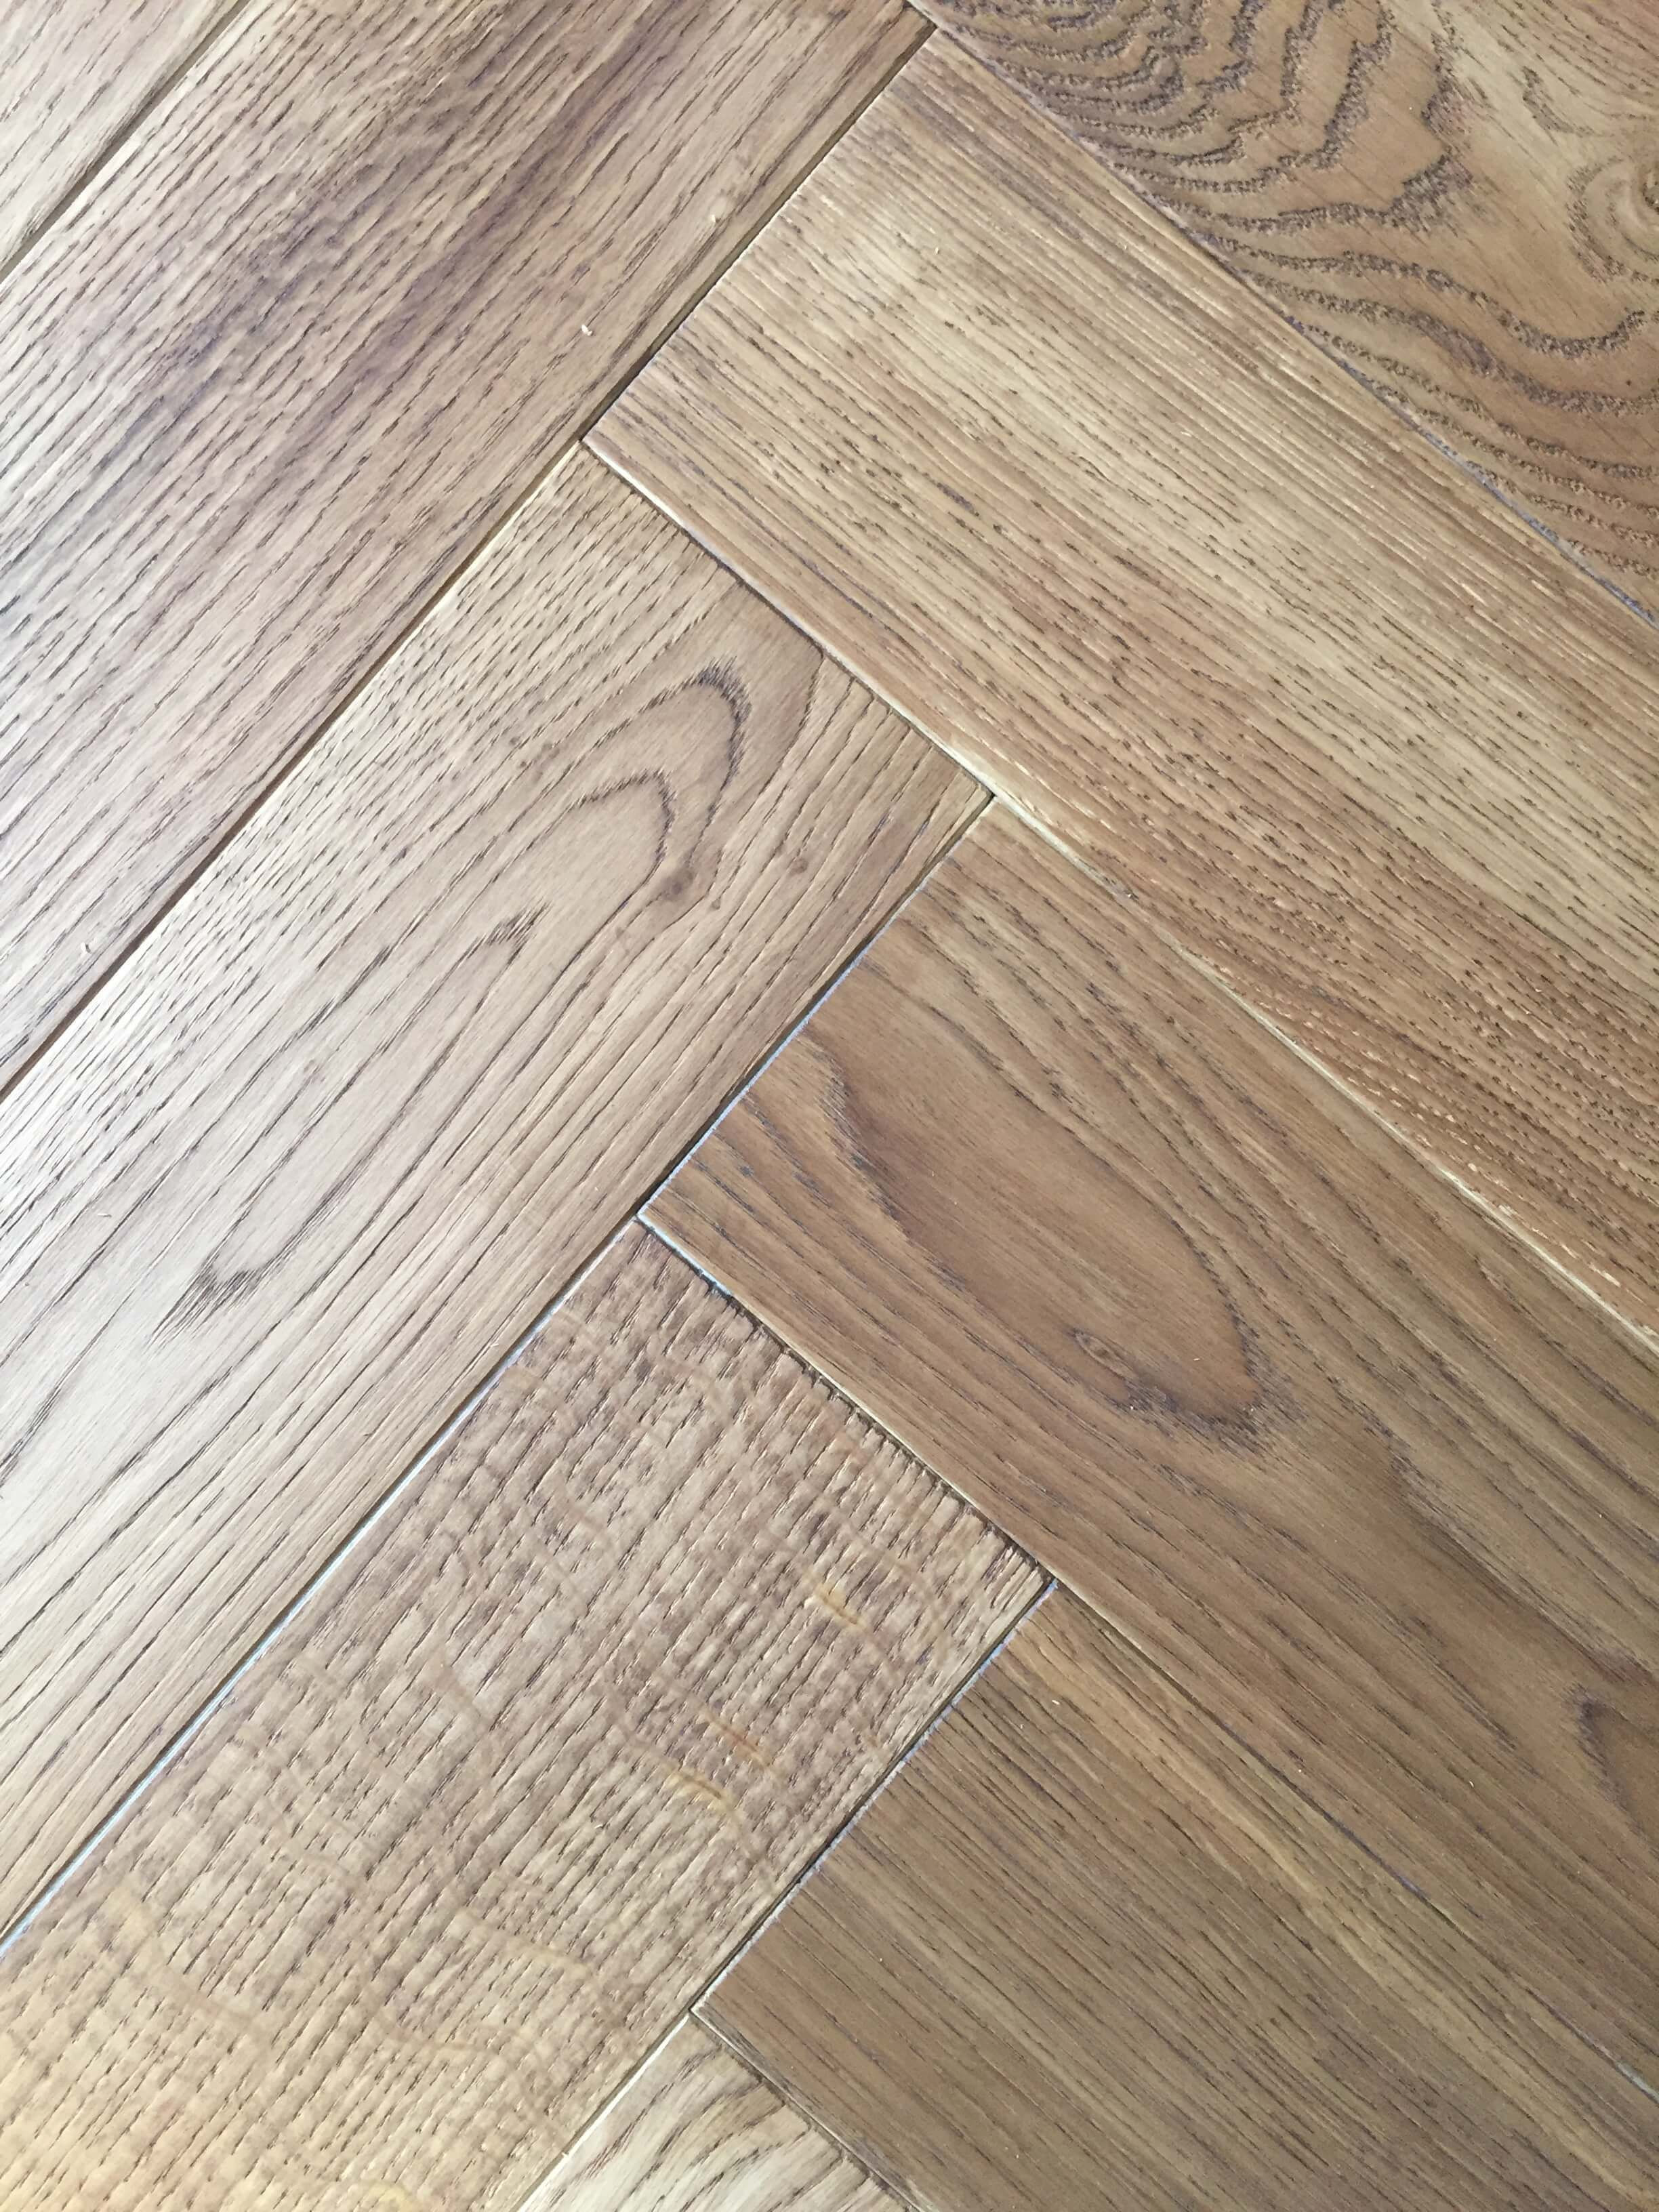 hardwood looking tile flooring of wood look tile flooring floor plan ideas inside wood look tile flooring woodlook